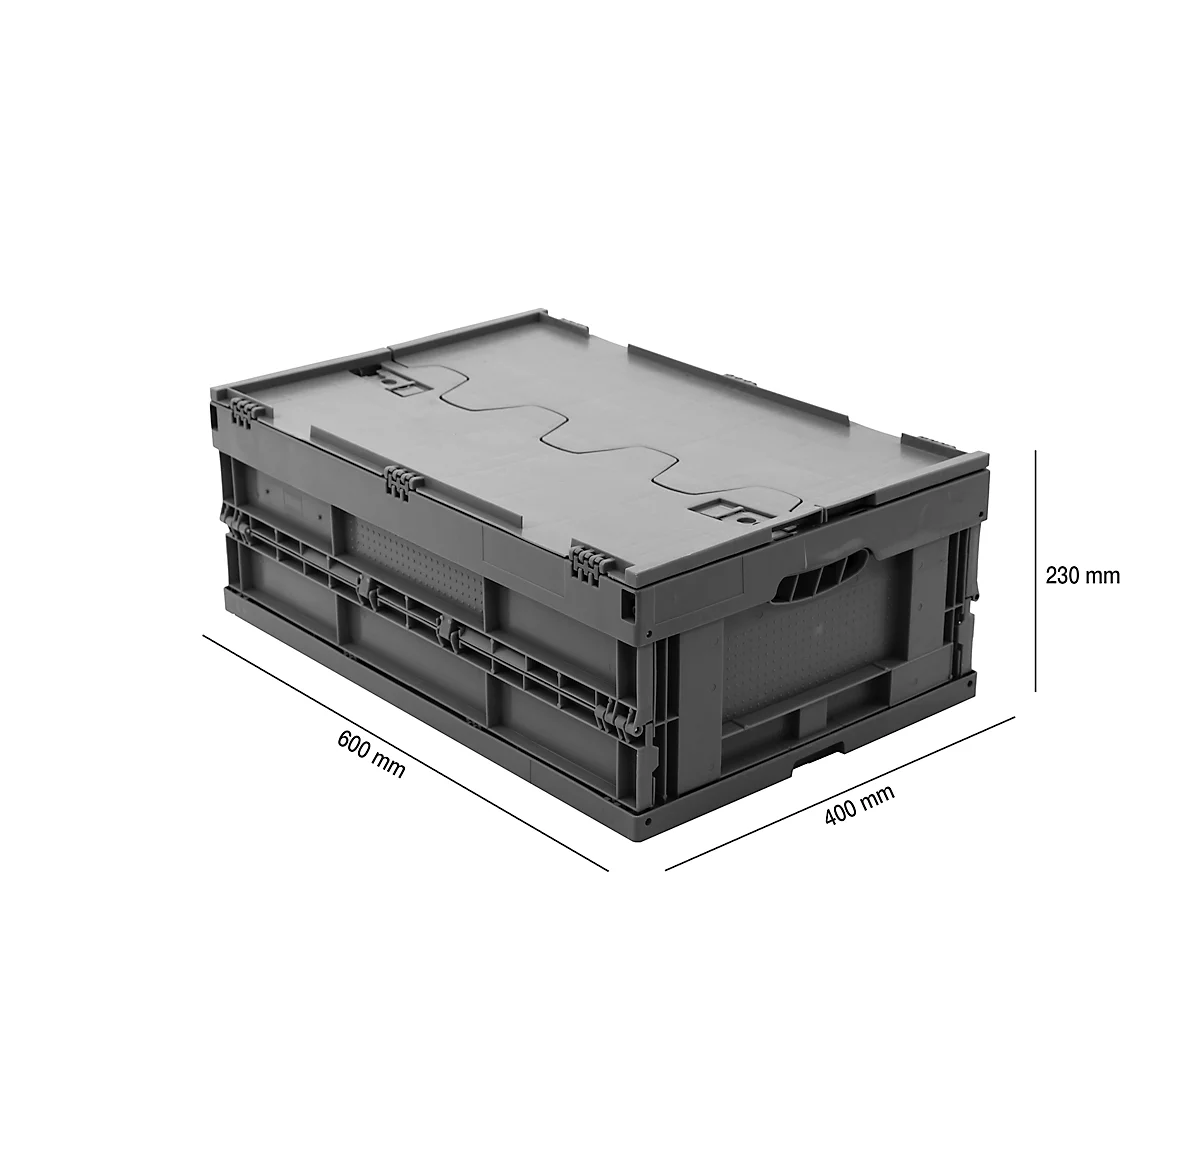 Caja plegable dimensiones norma europea 6422 NG DL, con tapa, para almacenamiento y transporte de retorno, 41,4 l, gris